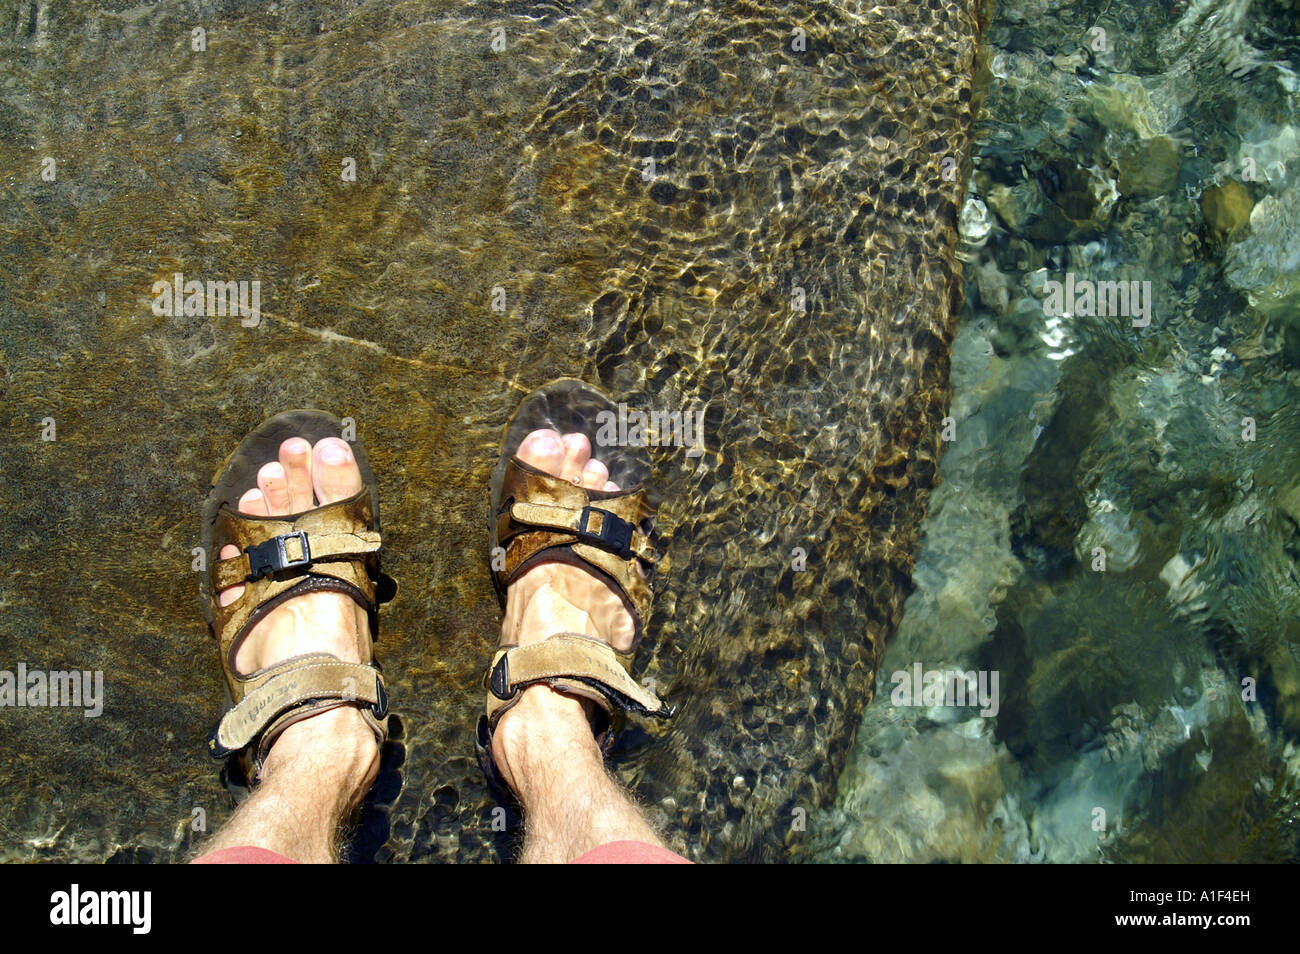 underwater sandals